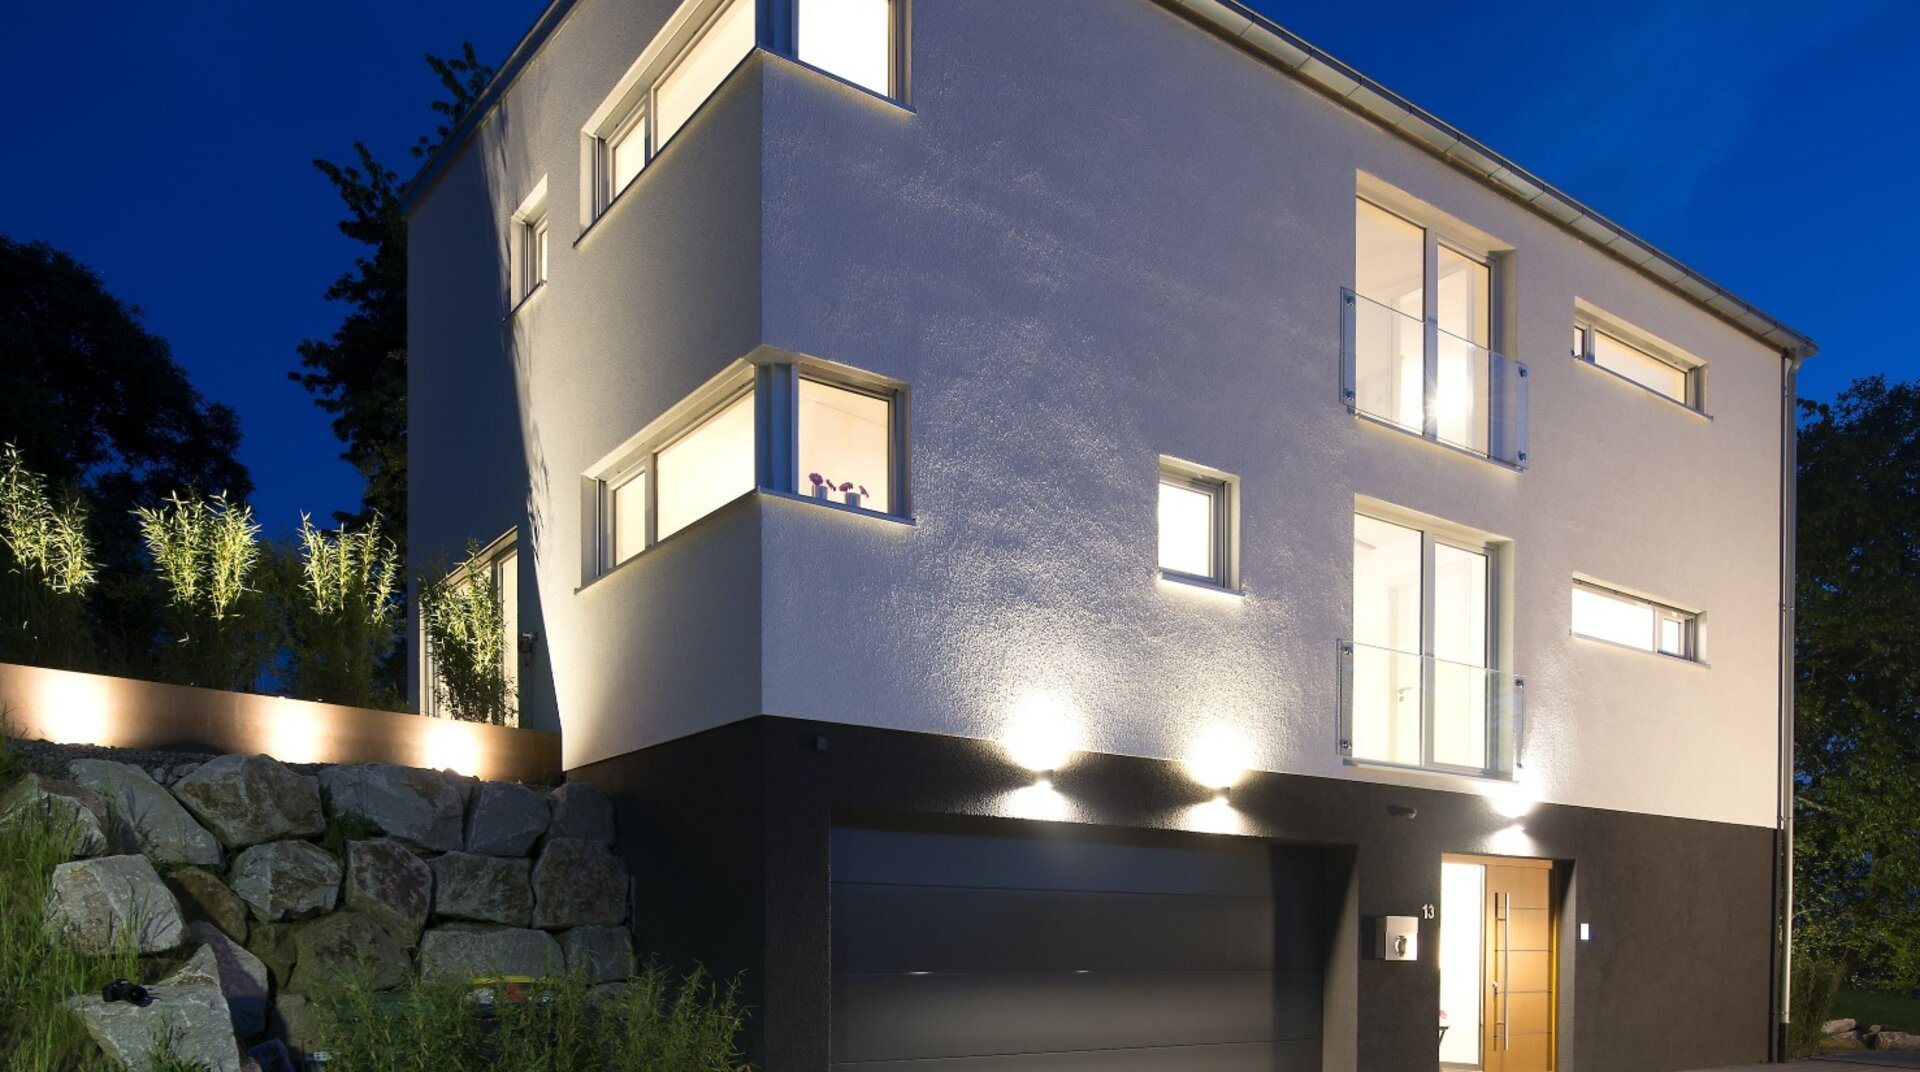 EFH Nothelfer Bühl, weißes Einfamilienhaus von außen bei Nacht, beleuchtet